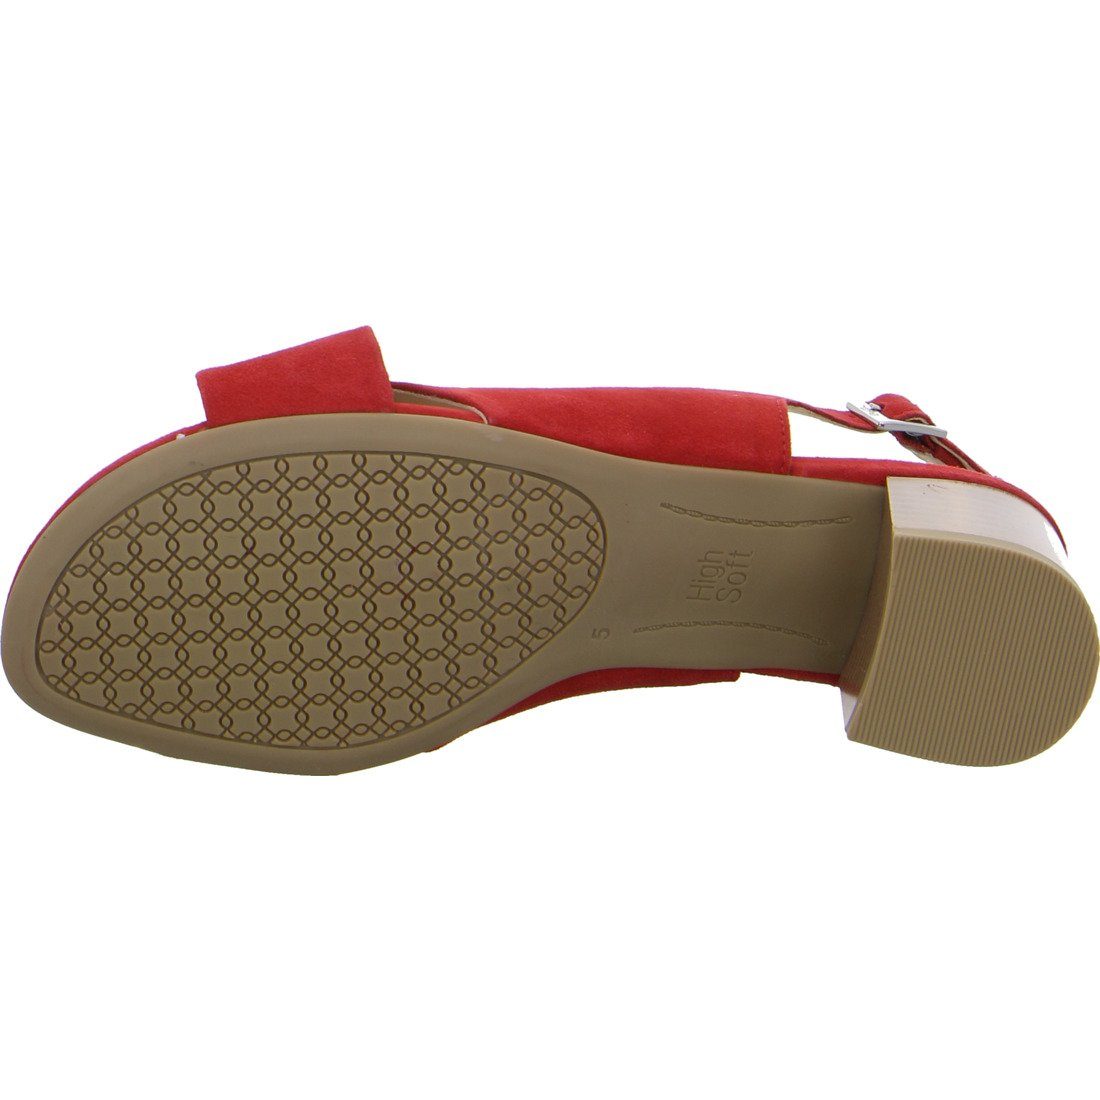 - Rauleder 047991 Damen Prato Sandalette Sandalette Ara Ara rot Schuhe,